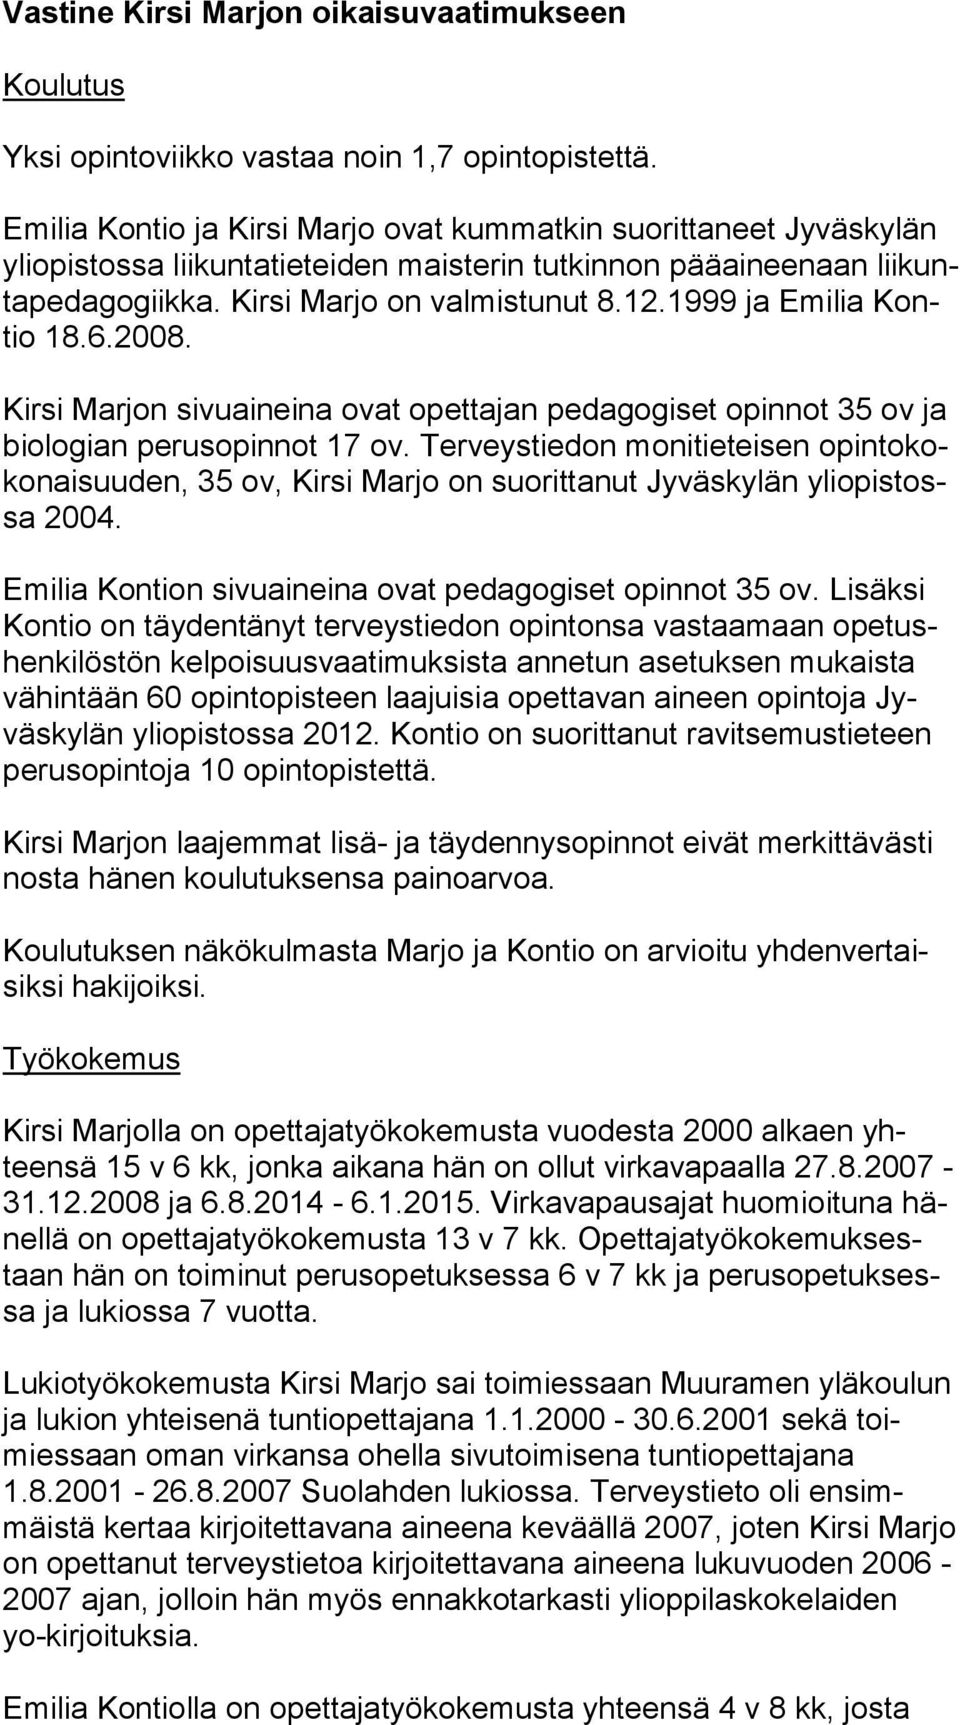 Kirsi Marjo on valmistunut 8.12.1999 ja Emilia Kontio 18.6.2008. Kirsi Marjon sivuaineina ovat opettajan pe da go gi set opinnot 35 ov ja bio lo gian perusopinnot 17 ov.